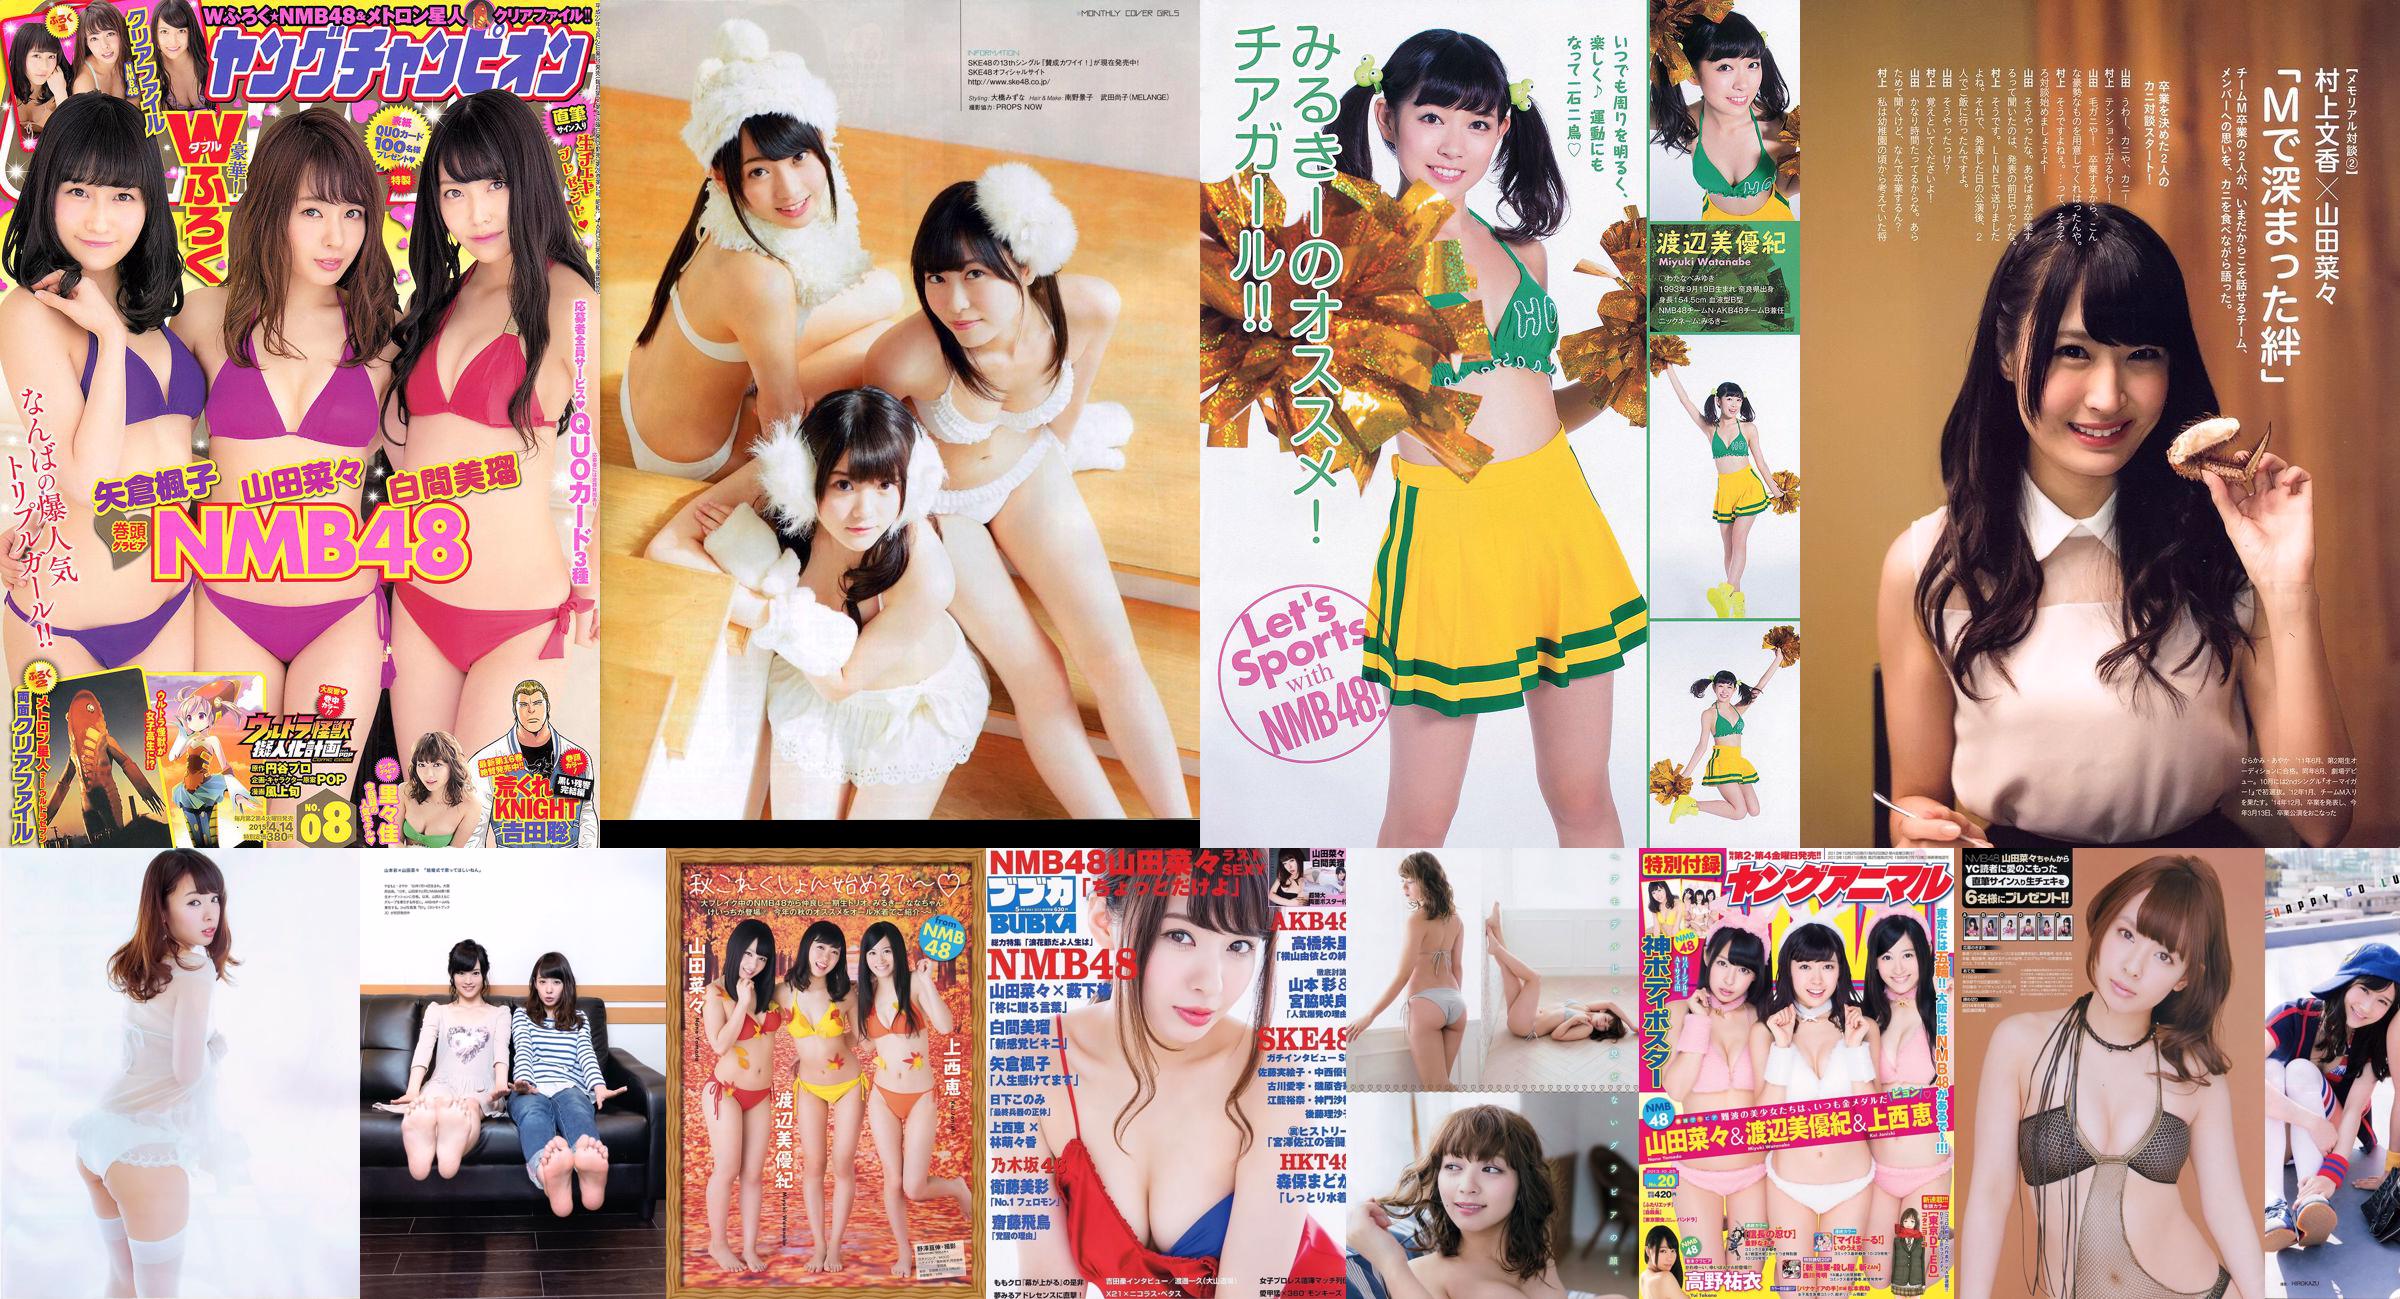 [BUBKA] Nana Yamada Miru Shiroma SKE48 Madoka Moriyasu Misa Eto 2015.05 Fotografia No.ffda6e Página 1